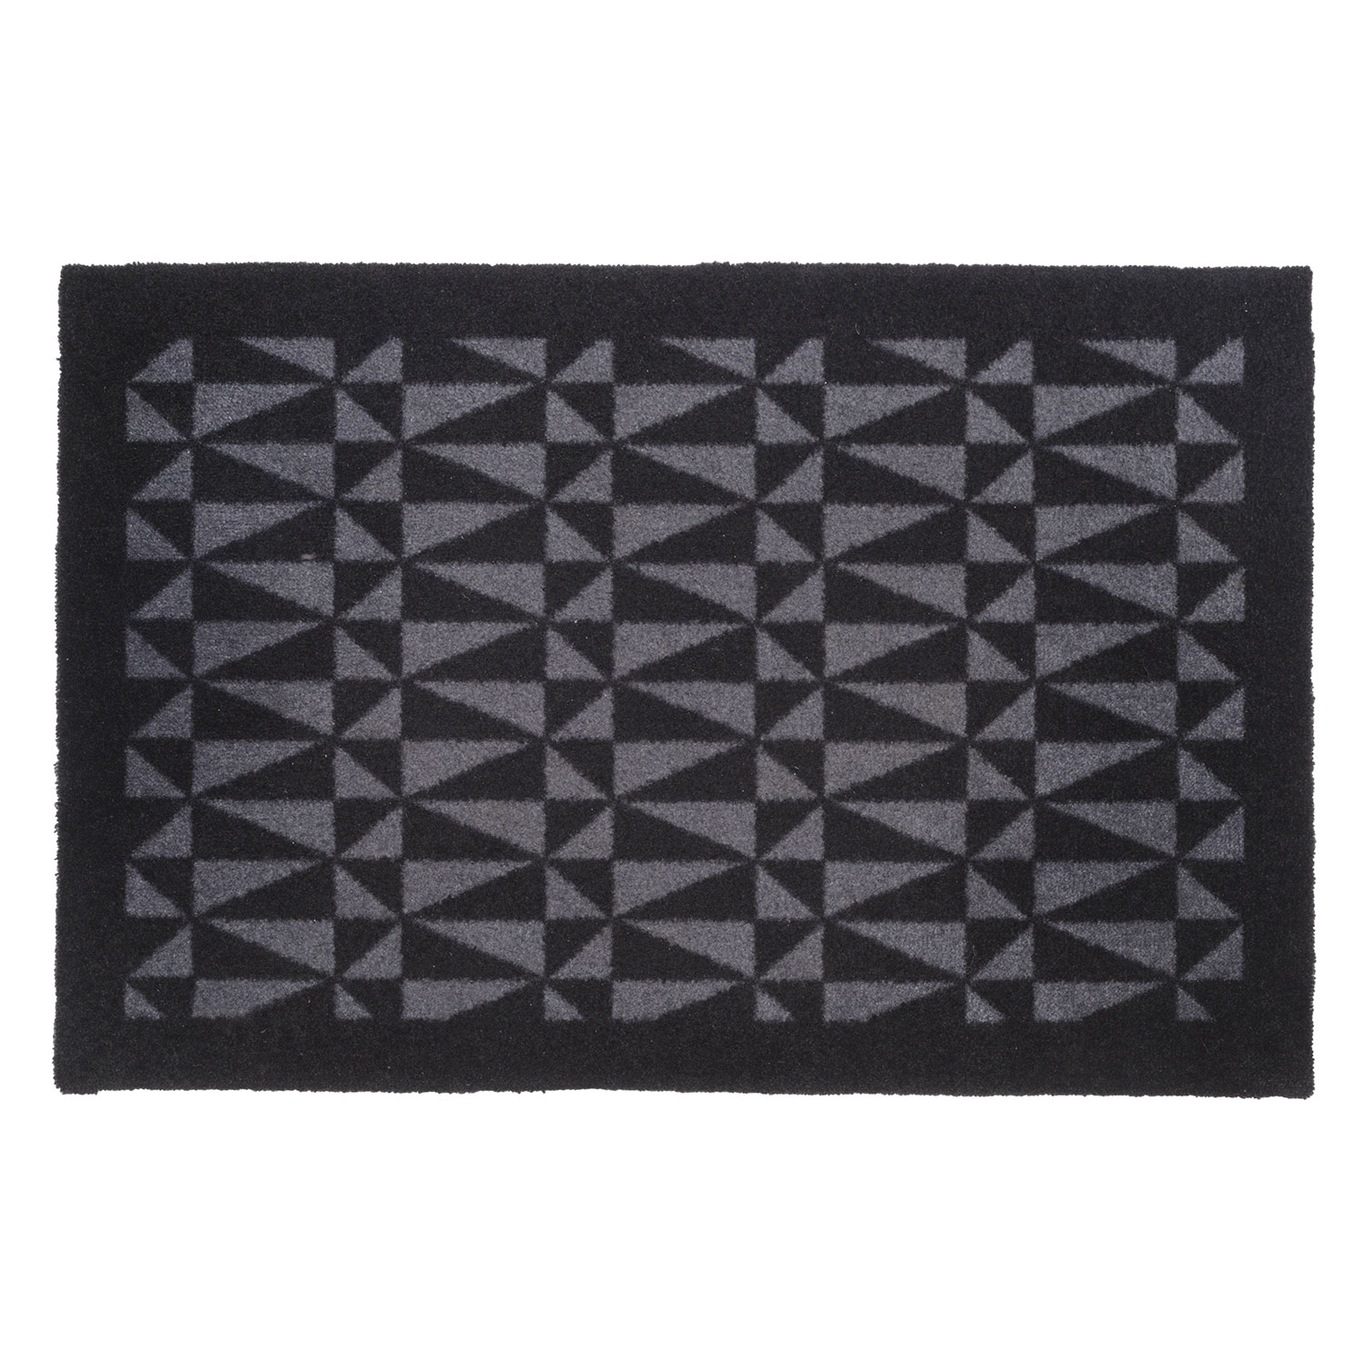 Graphic Doormat 60x90cm, Black/Grey